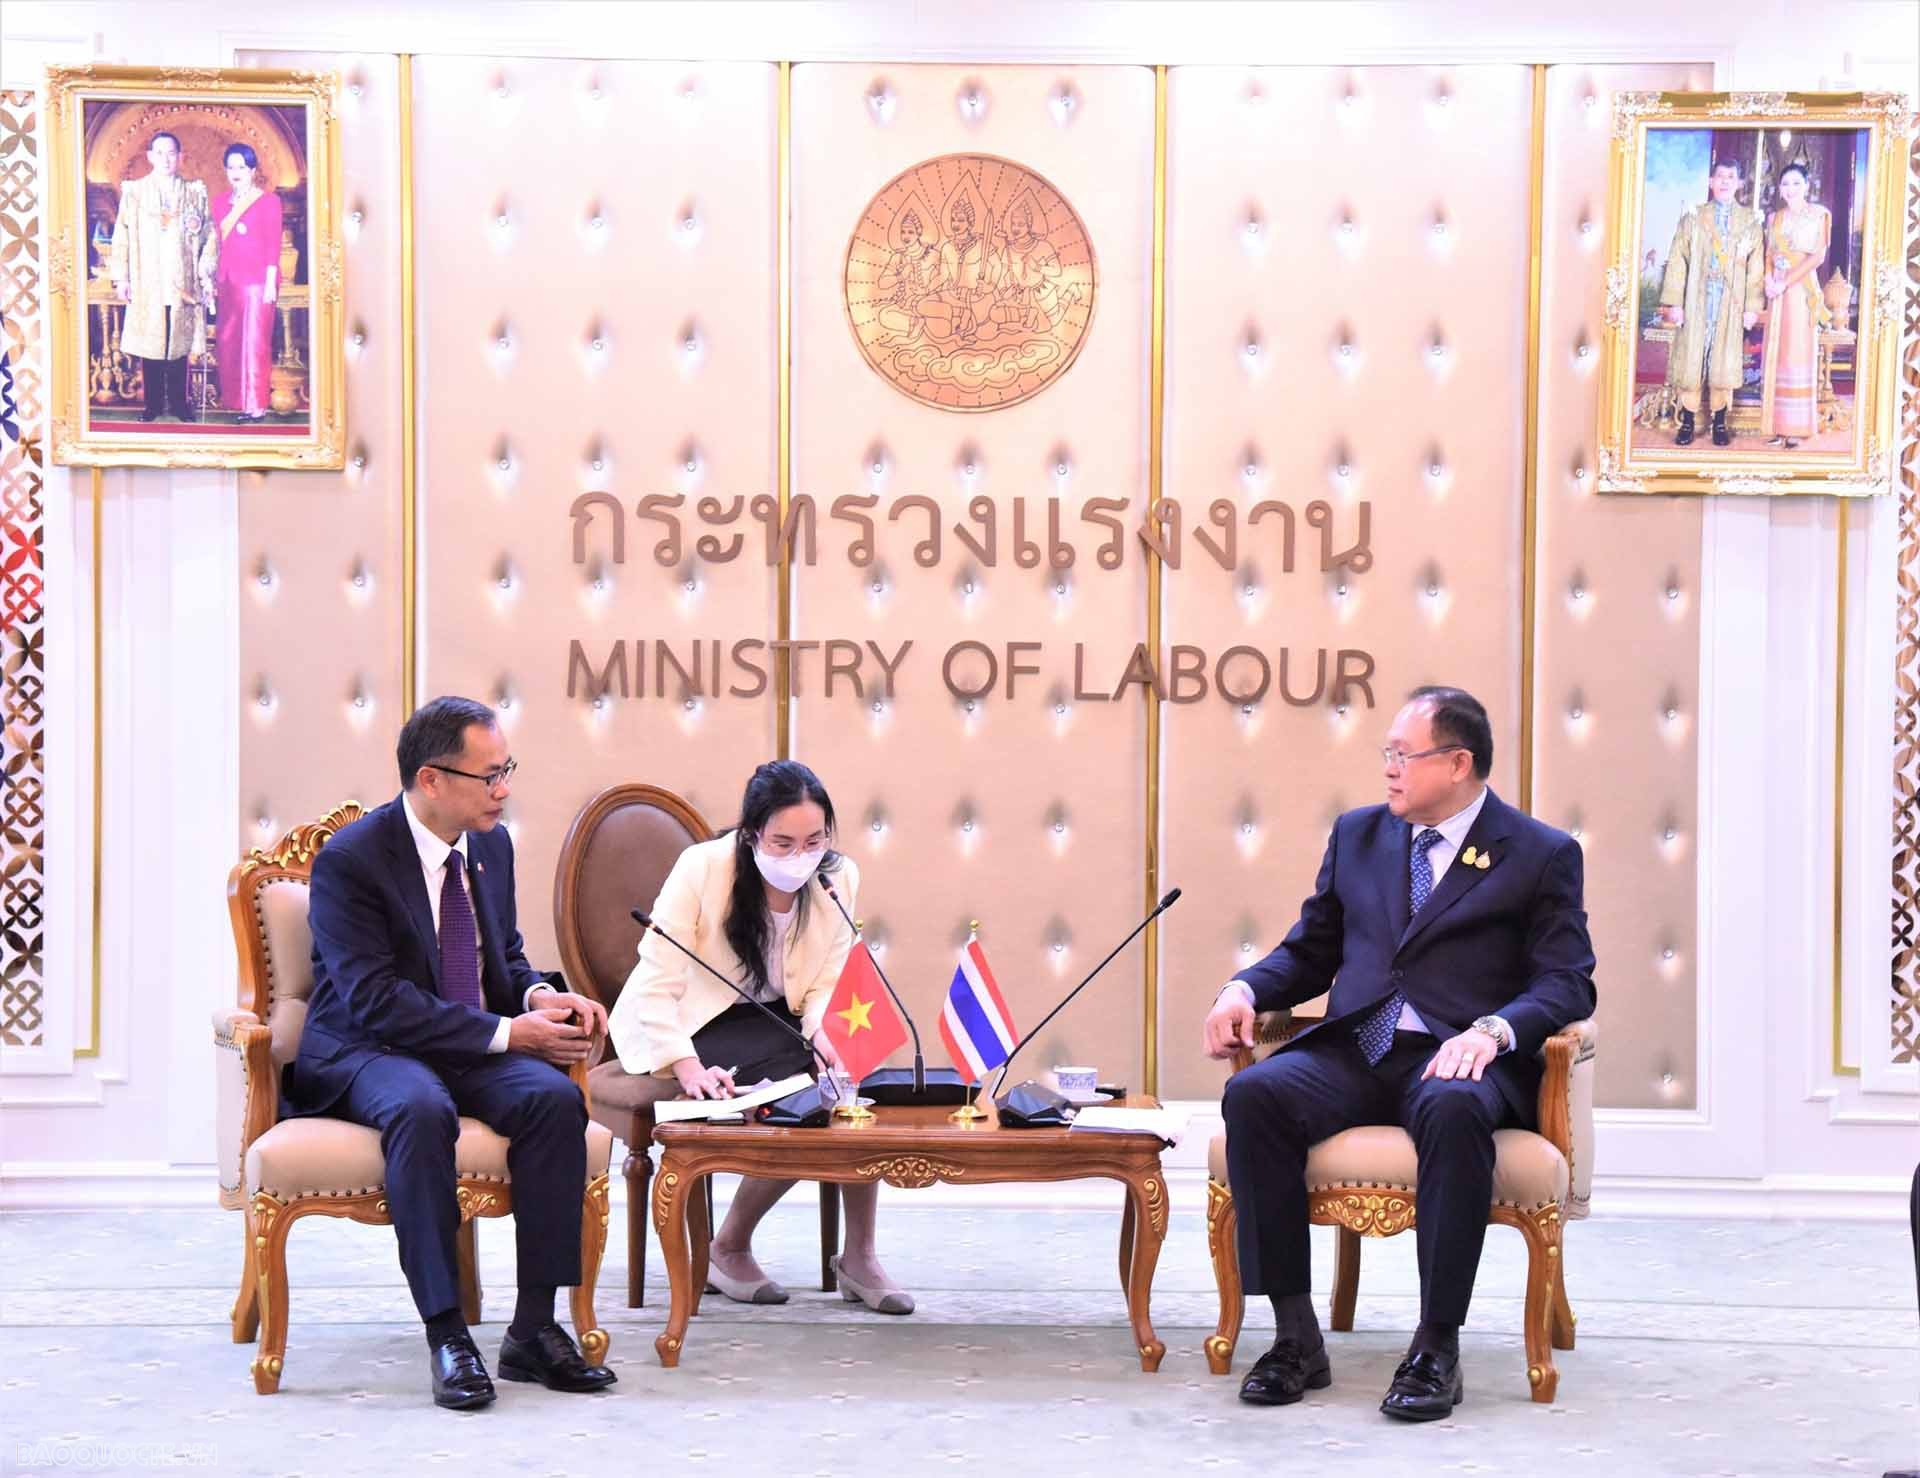 Đại sứ Phan Chí Thành trao đổi với ông Surachai Chaitrakulthong, Thứ trưởng Bộ Lao động Thái Lan